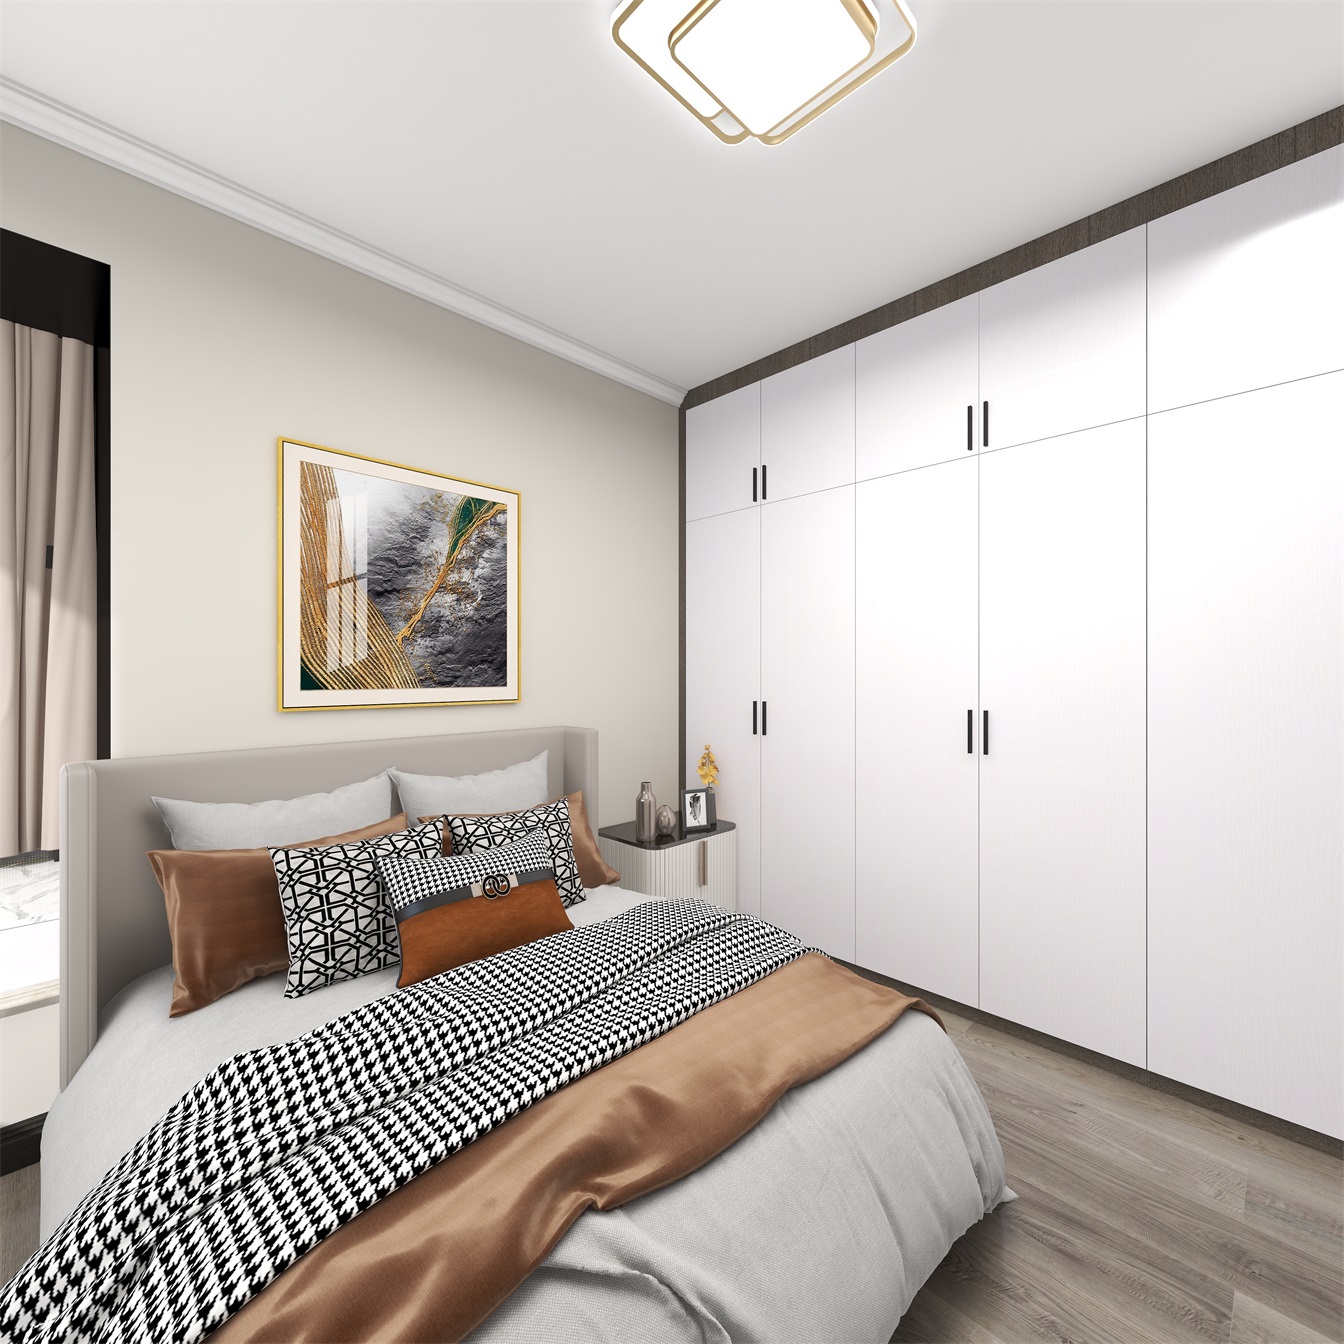 老人房设计简单，功能上满足生活需求，白色顶墙衣柜设计大气，收纳功能强。